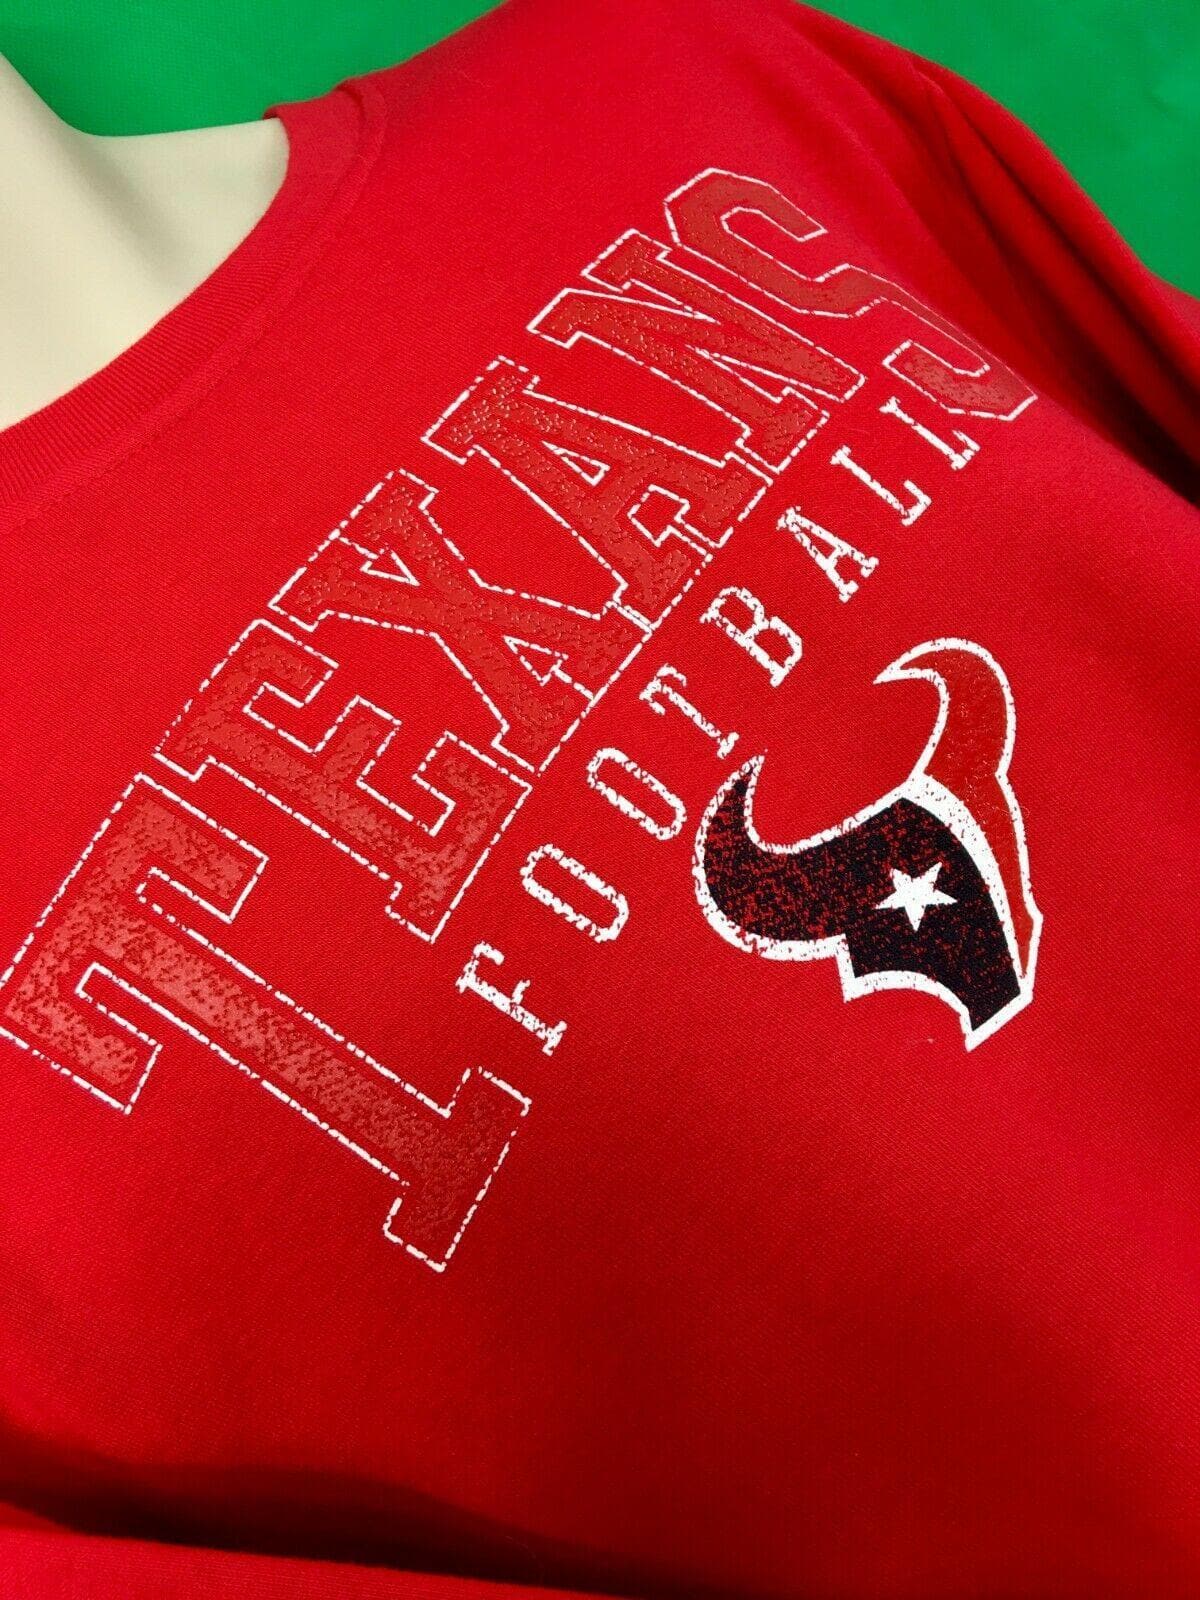 NFL Houston Texans Pro Line Sweatshirt Men's Medium NWOT